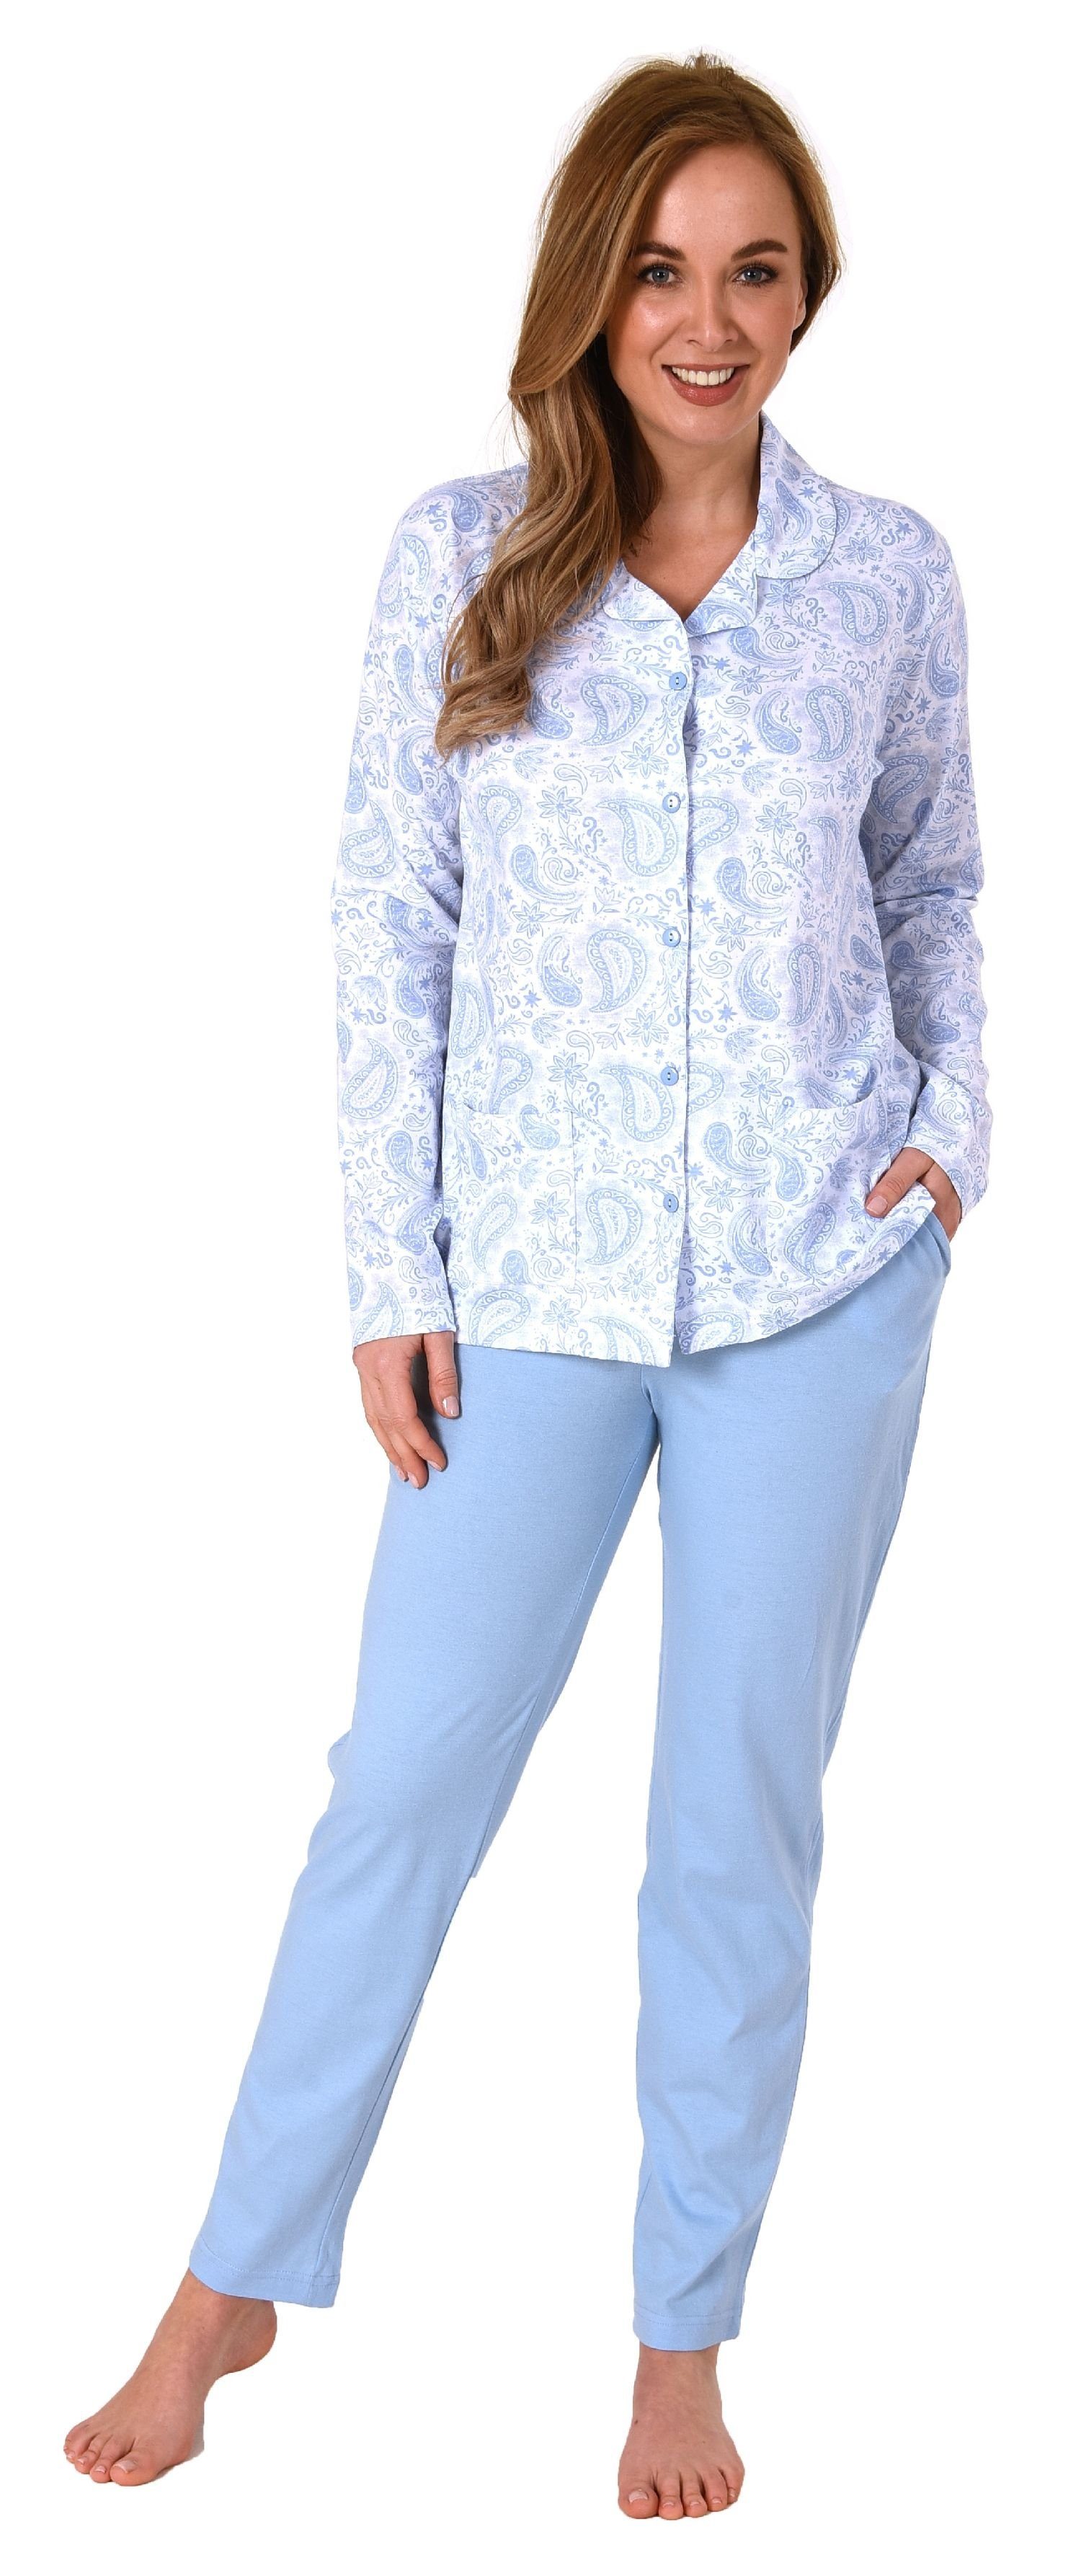 zum in Pyjama Damen Jersey langarm durchknöpfen hellblau Qualität Normann Pyjama Single